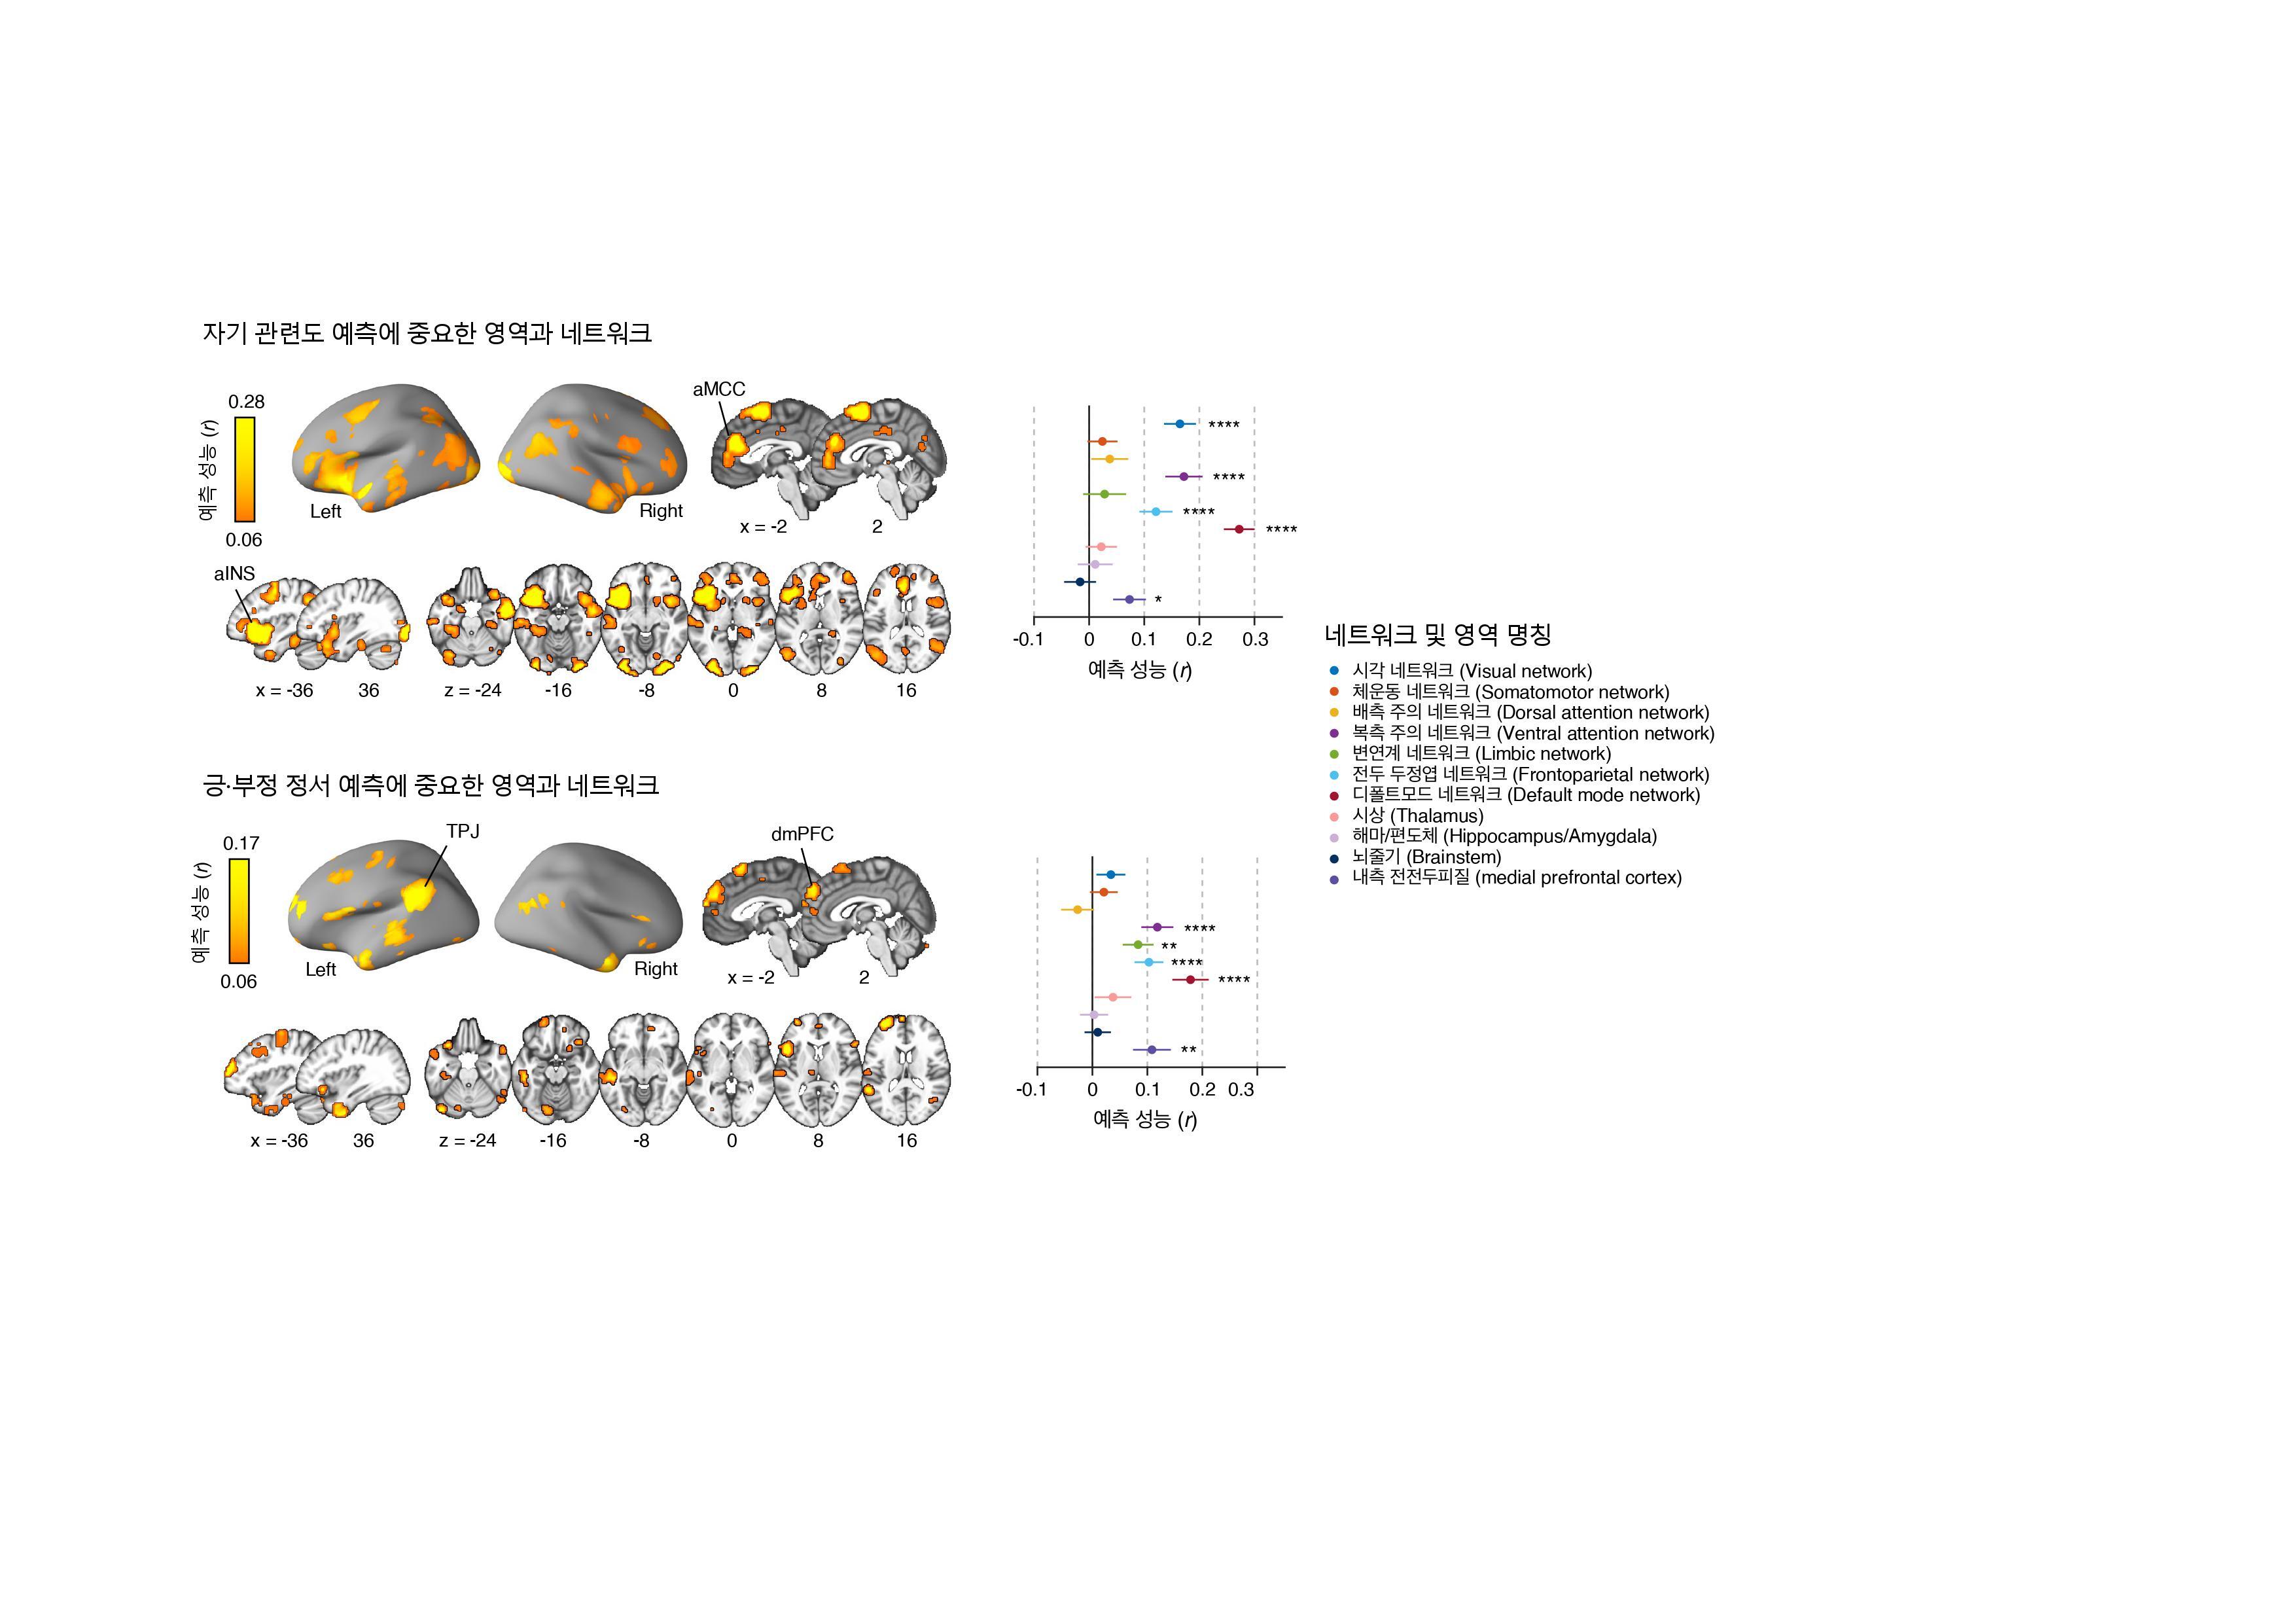 [그림1] 자기 관련도와 긍·부정 정서를 예측하는 모델
            자기 관련도와 긍·부정 정서를 예측하는 모델에서 중요한 영역과 네트워크를 나타낸다. 자기 관련도를 예측하는 데에는 앞쪽 뇌섬엽(aINS; anterior insula)과 중앙대상피질(aMCC; anterior midcingulate cortex) 등의 영역이, 긍·부정 정서의 경우에는 왼쪽 측두두정접합 영역(TPJ; temporoparietal junction)과 배내측 전전두피질(dmPFC; dorsomedial prefrontal cortex) 등의 영역이 각각 중요한 역할을 한다. 또한, 네트워크 차원에서는 디폴트모드 네트워크(default mode network), 복측 주의 네트워크(ventral attention network), 전두 두정엽 네트워크(frontoparietal network) 등이 자기 관련도와 긍·부정성 정서 모두를 예측하는 데 중요함을 보여준다.